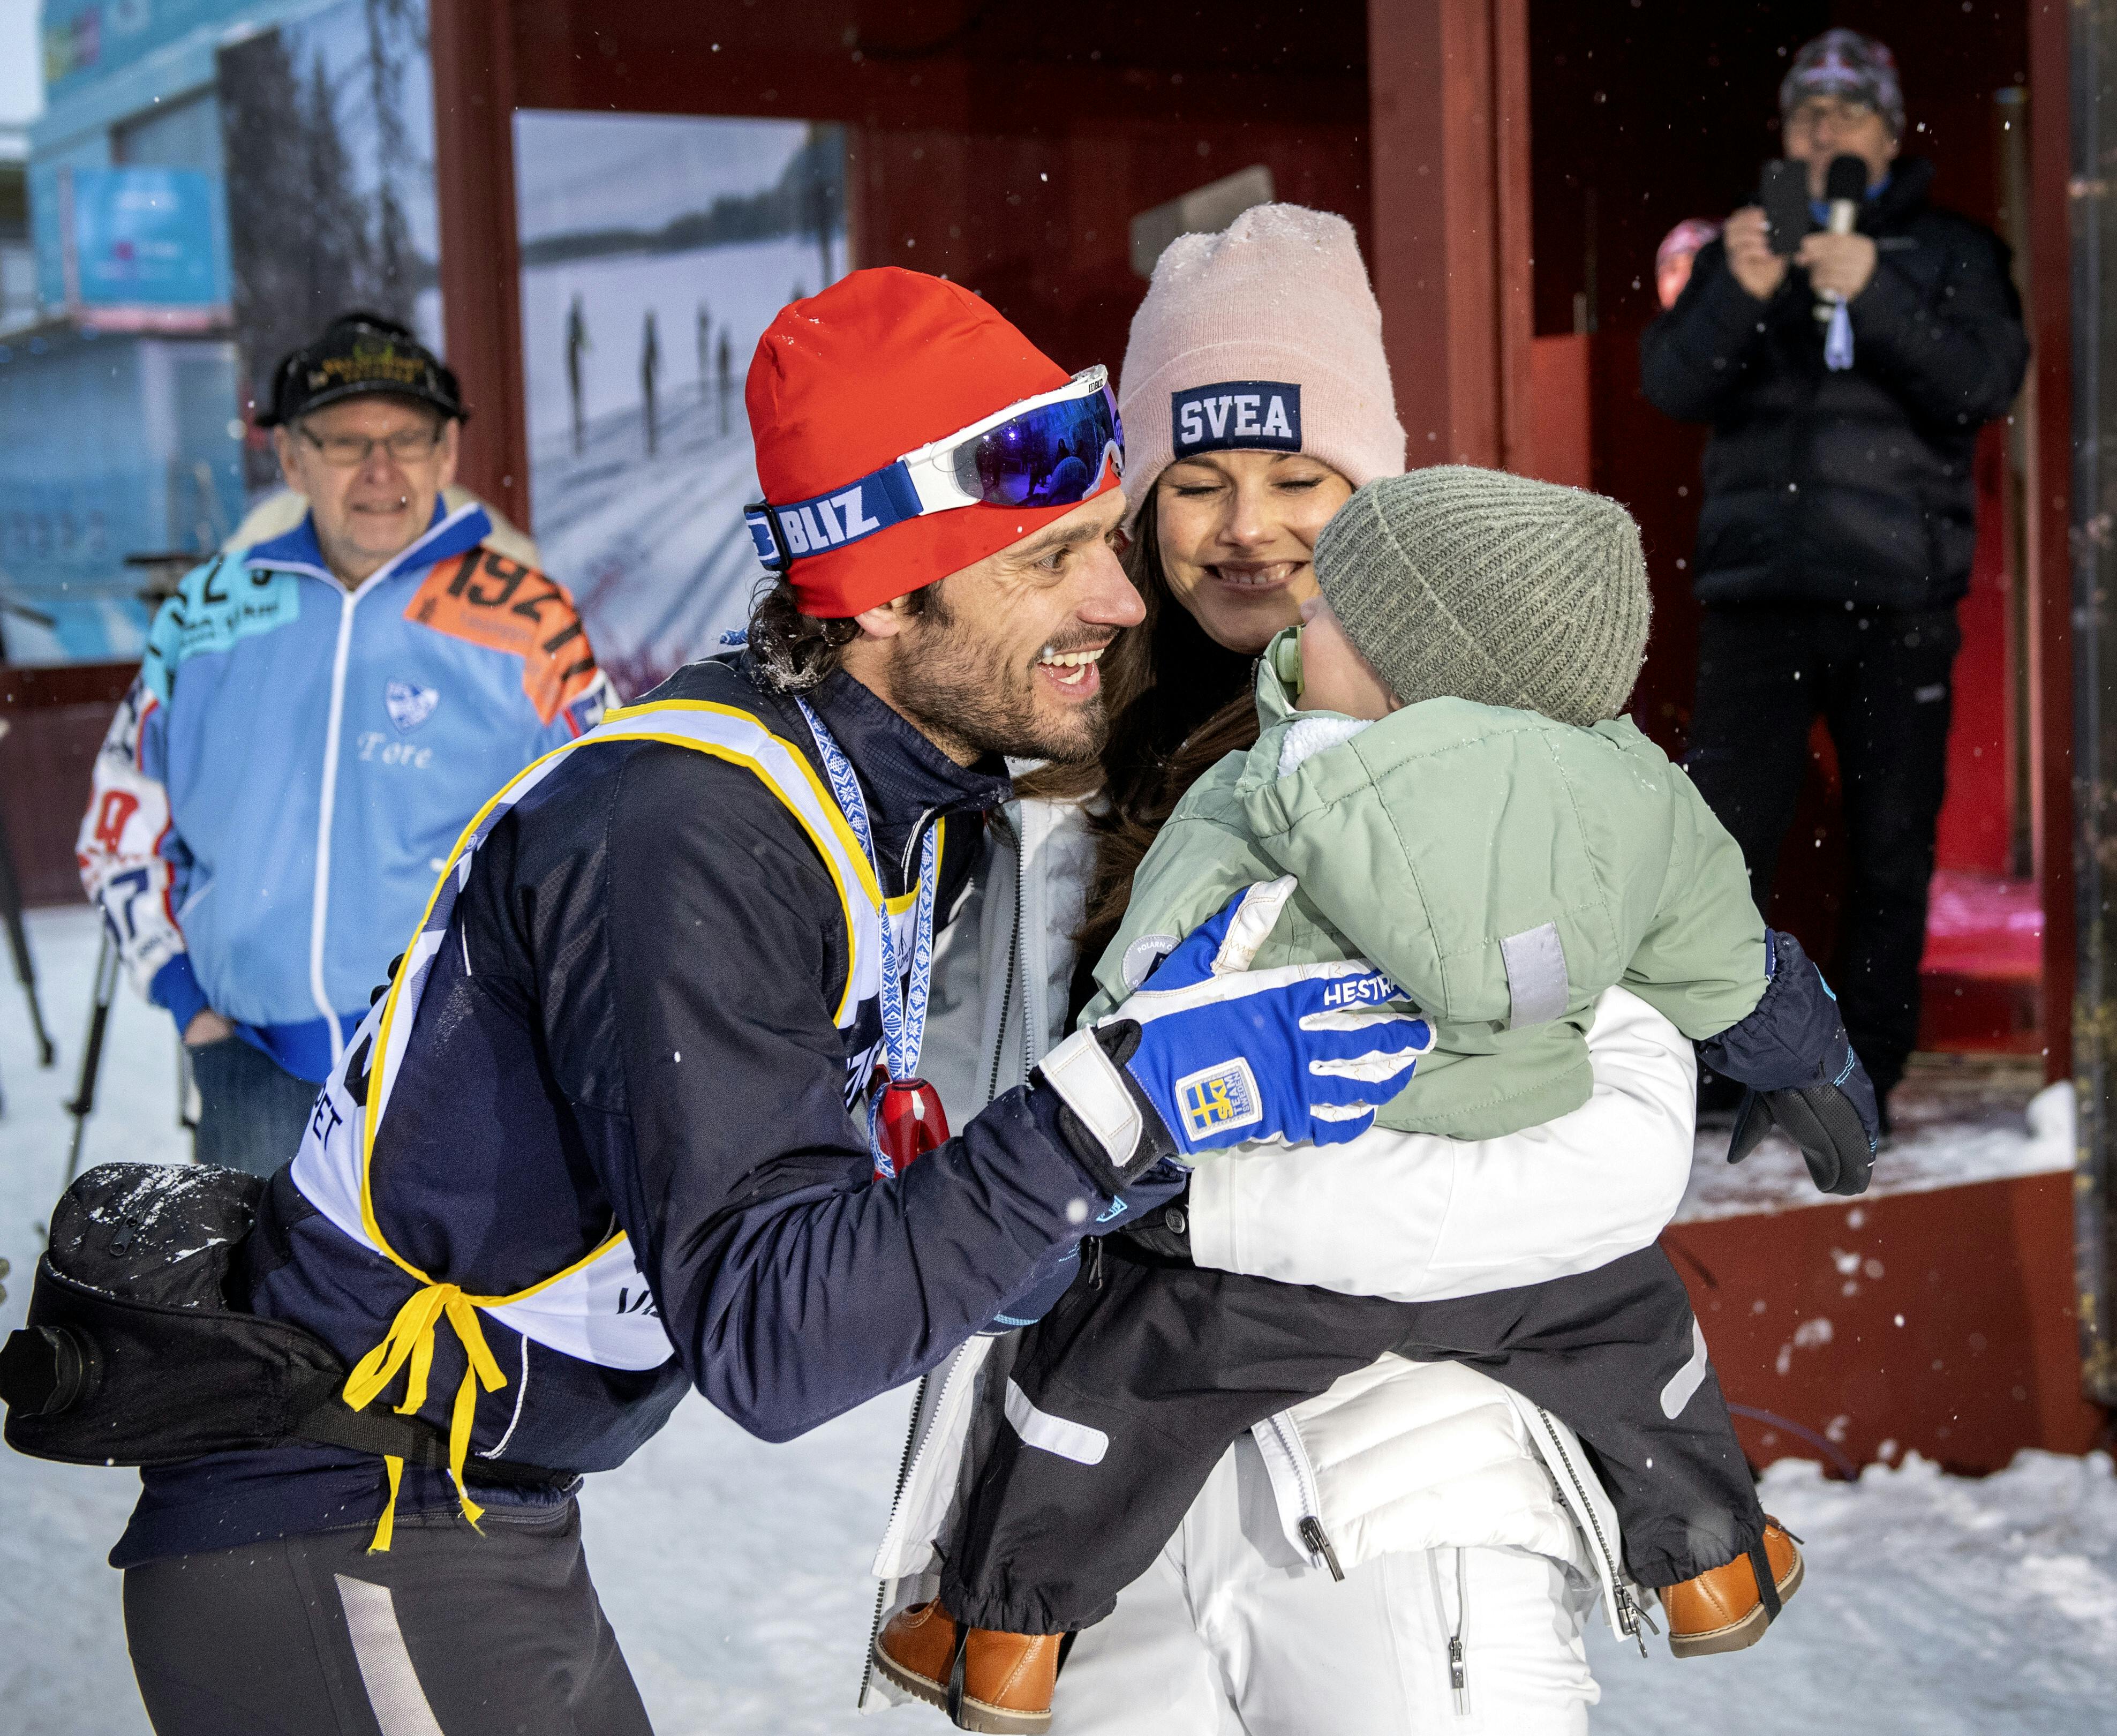 MORA 2019-03-03 Prinsessan Sofia och prins Gabriel gratulerar prins Carl Philip vid målet i Mora efter Vasaloppet 2019. Foto Ulf Palm / TT / Kod 9110